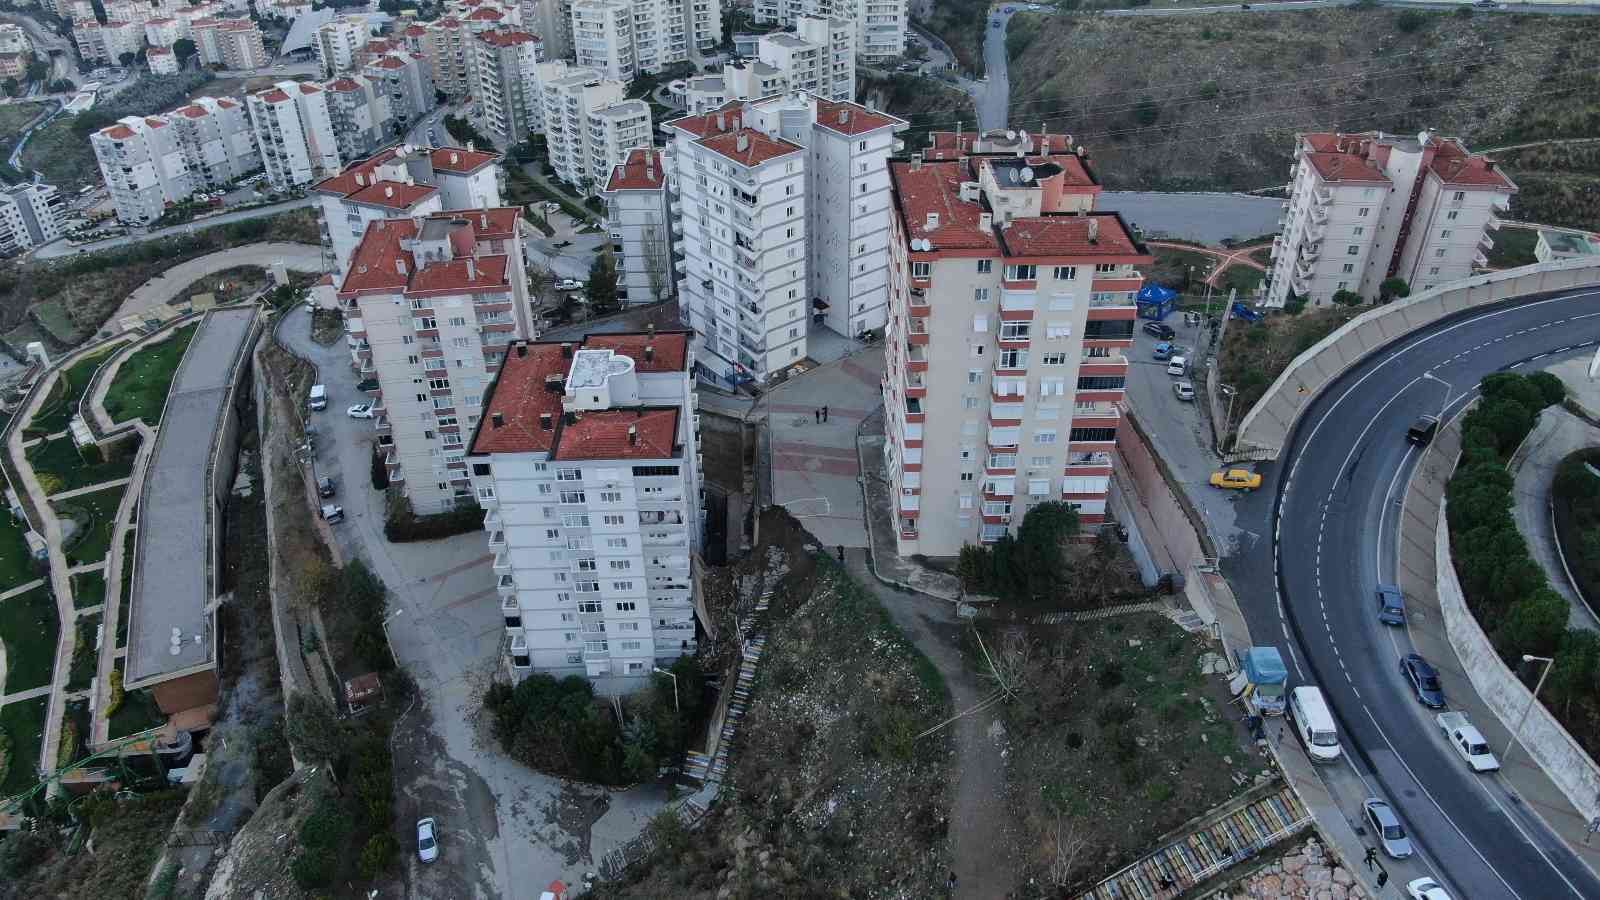 İzmir’de yıkılan istinat duvarının bilançosu havadan görüntülendi: 88 daire tahliye edildi #izmir